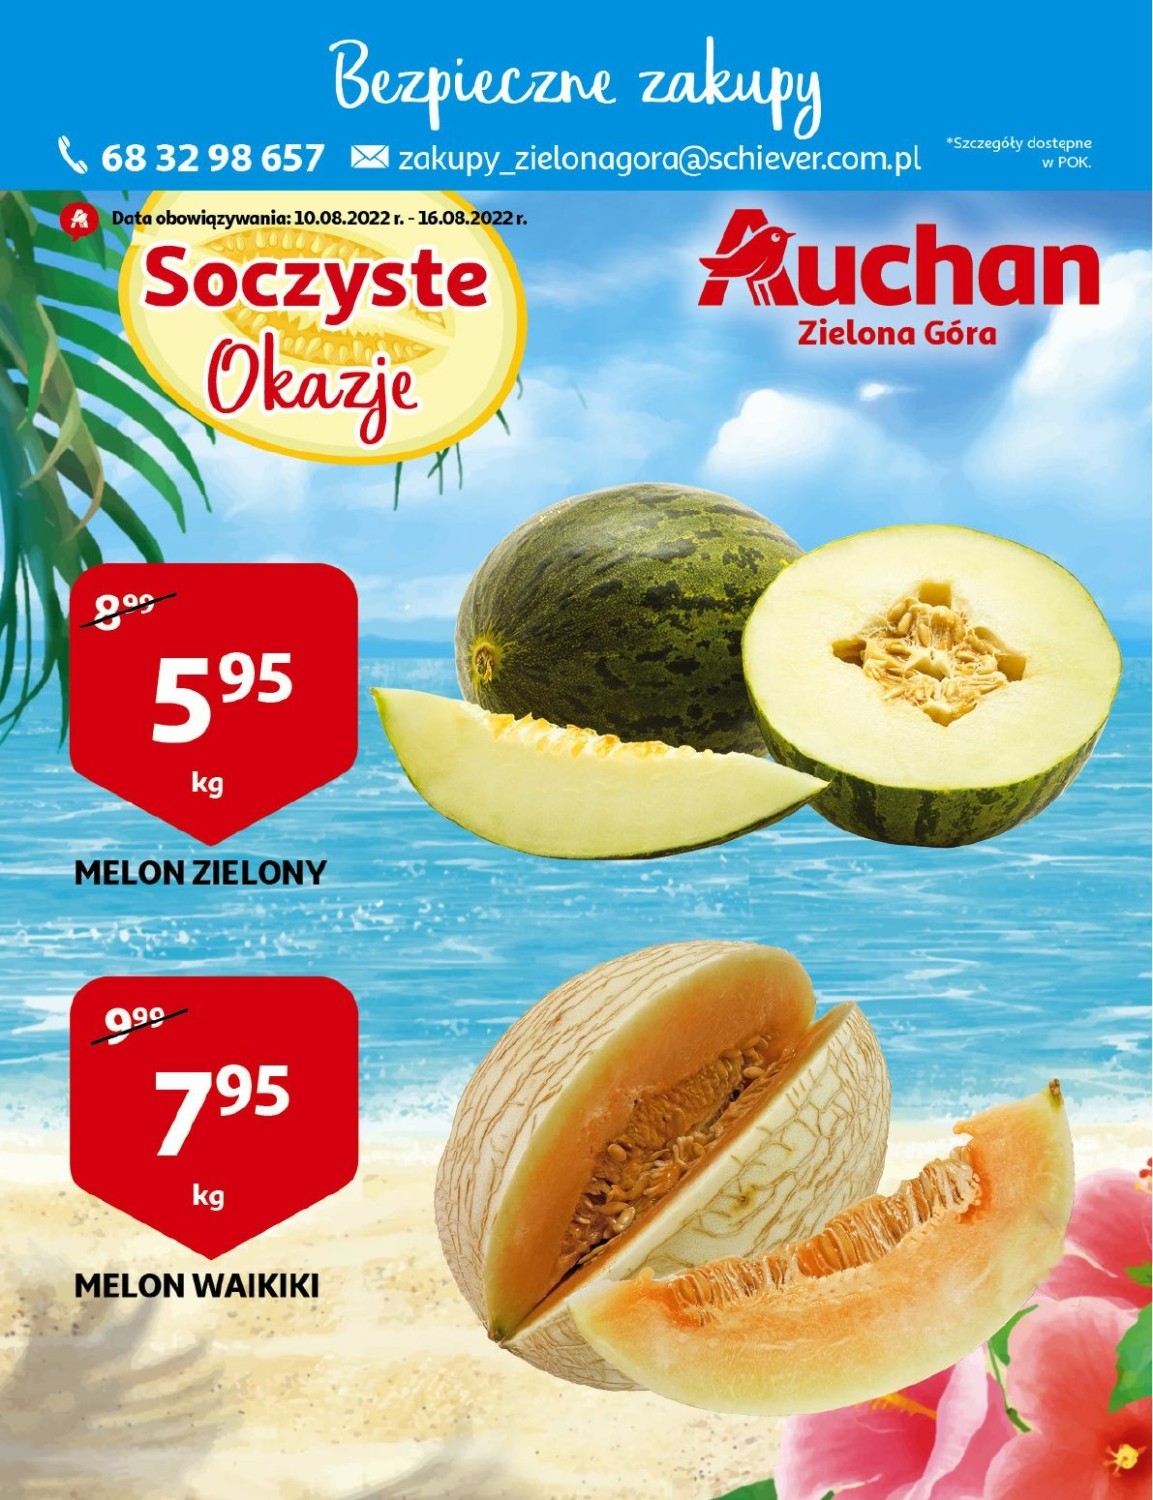 Gazetka Auchan od 10.08.2022 do 16.08.2022 - Zielona góra